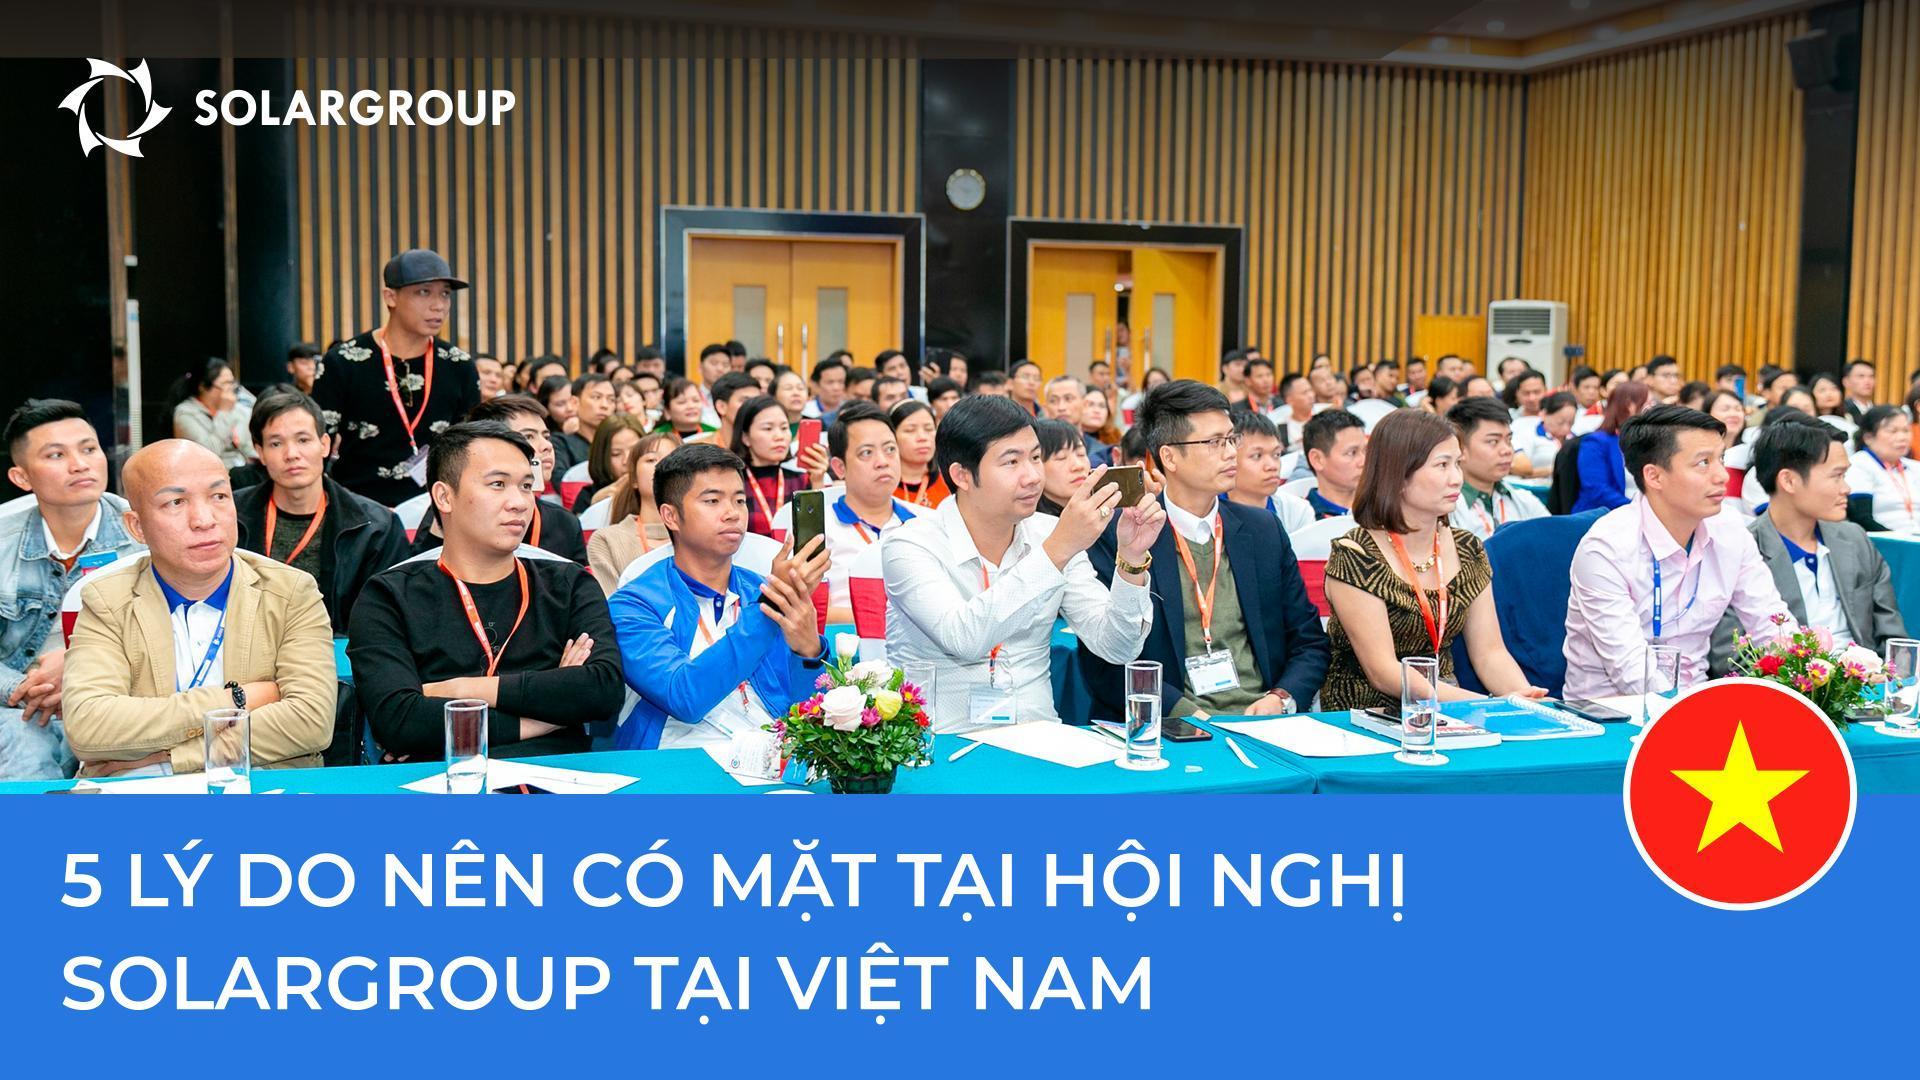 5 lý do nên có mặt tại hội nghị SOLARGROUP tại Việt Nam